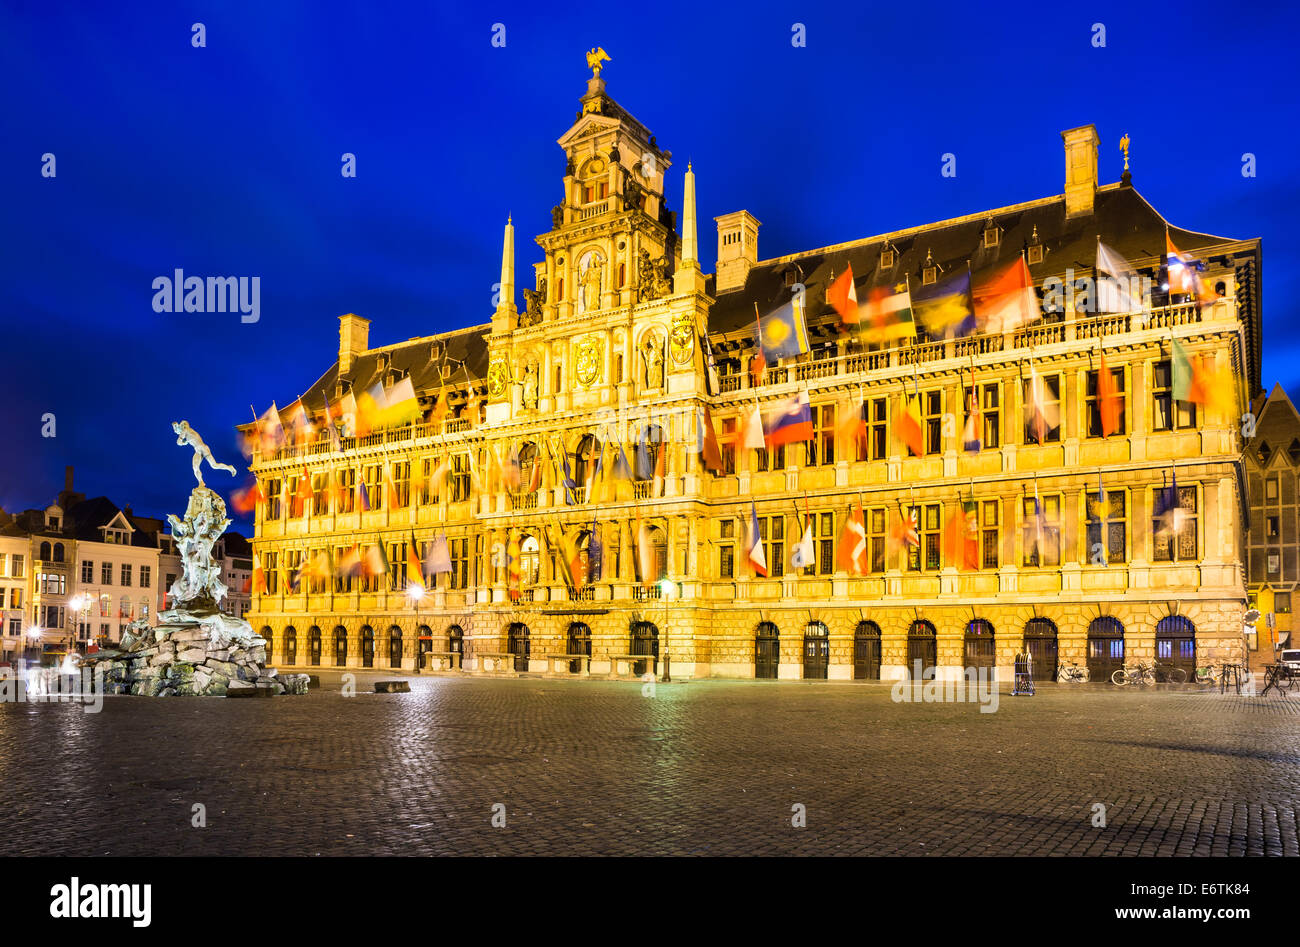 Grote Markt, Antwerpen in Belgien spektakuläre zentralen Quadrat und elegant aus dem 16. Jahrhundert Stadhuis (Rathaus) gekleidet mit Flaggen Stockfoto